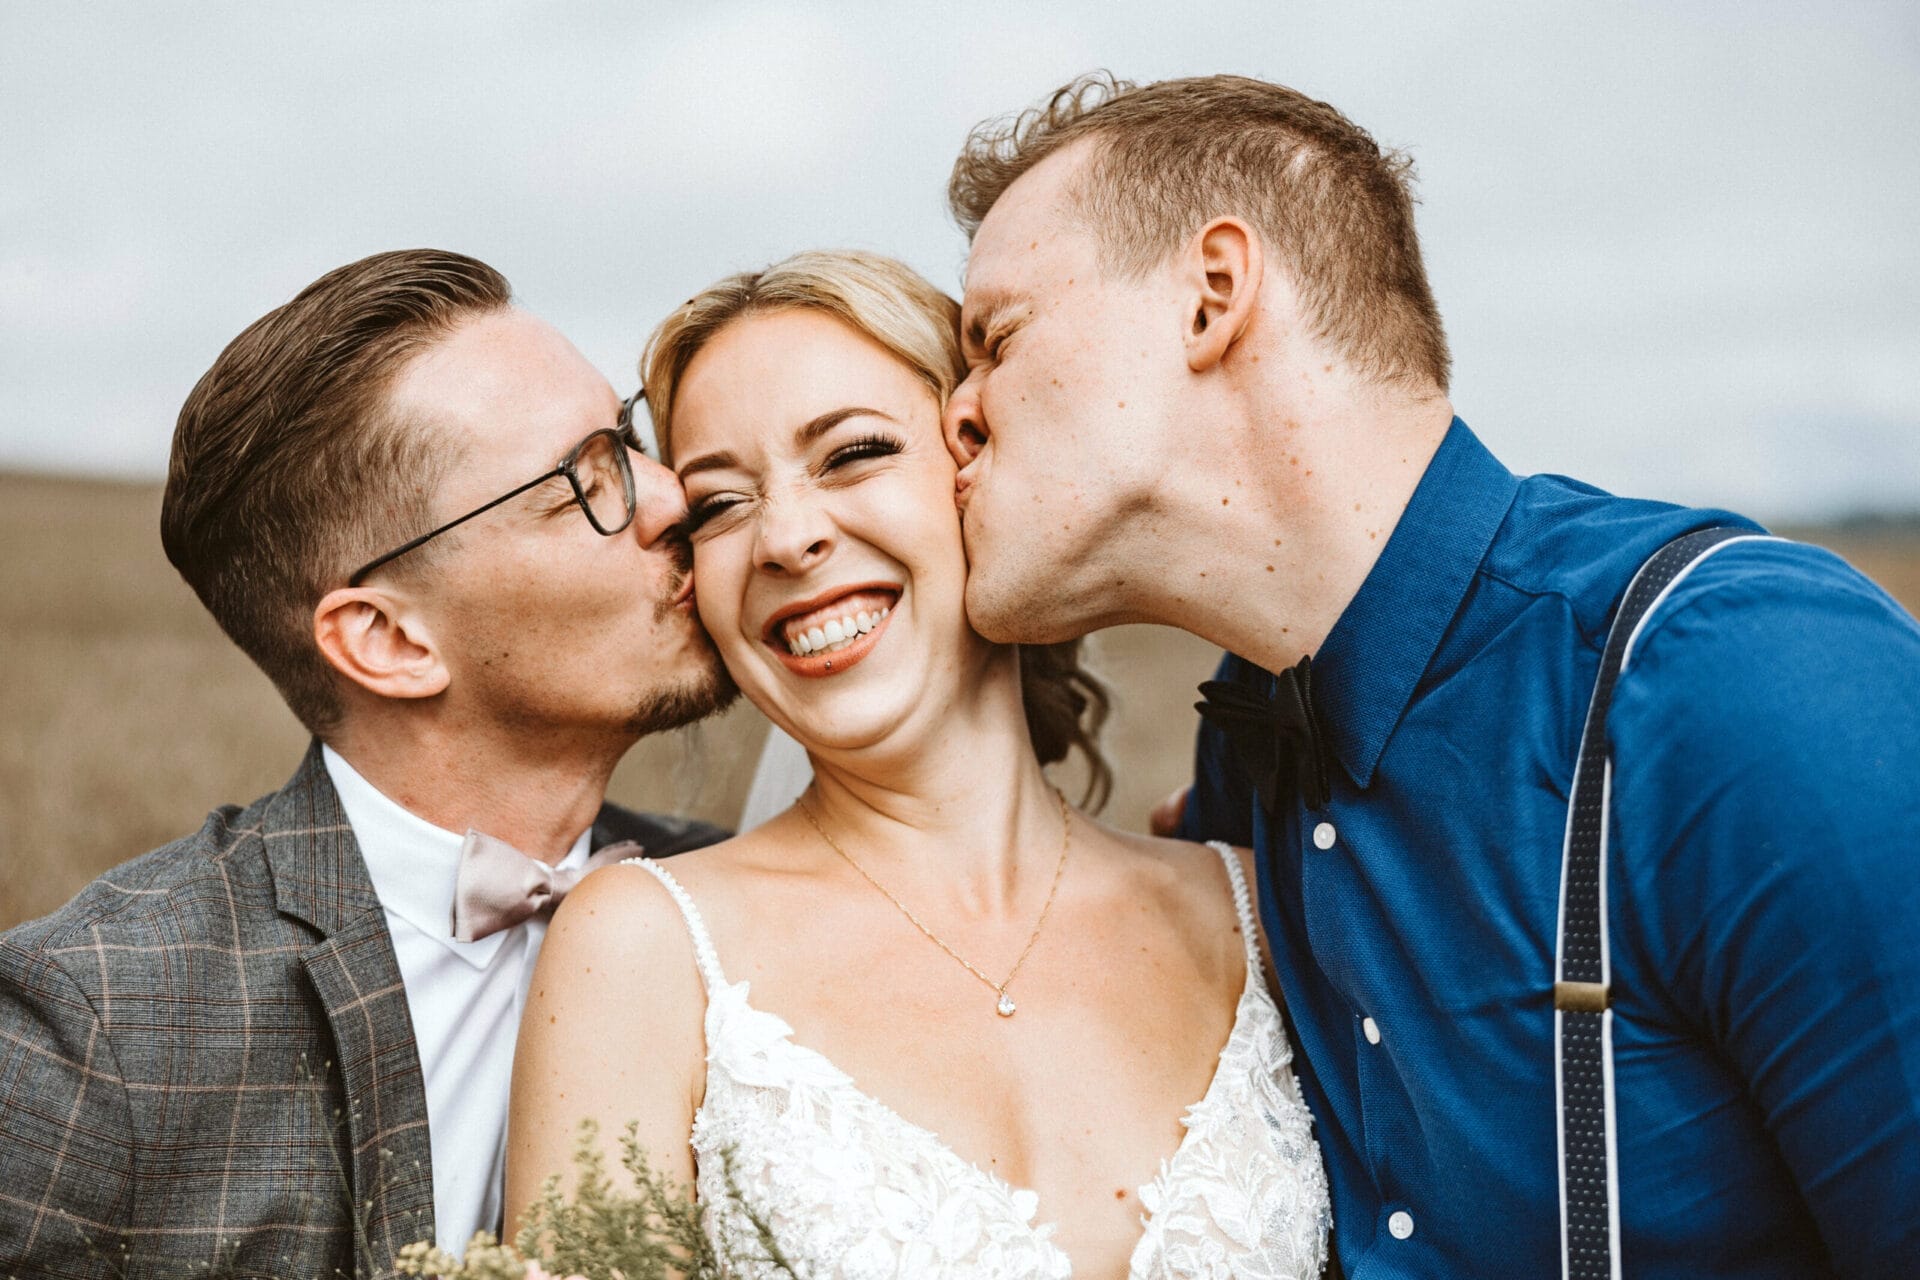 Hochzeit Heiraten Hochzeitsfotograf Dominik Neugebauer - Braut wird von Trauzeuge und Bräutigam auf die Wange geküsst. Die Braut lächelt.